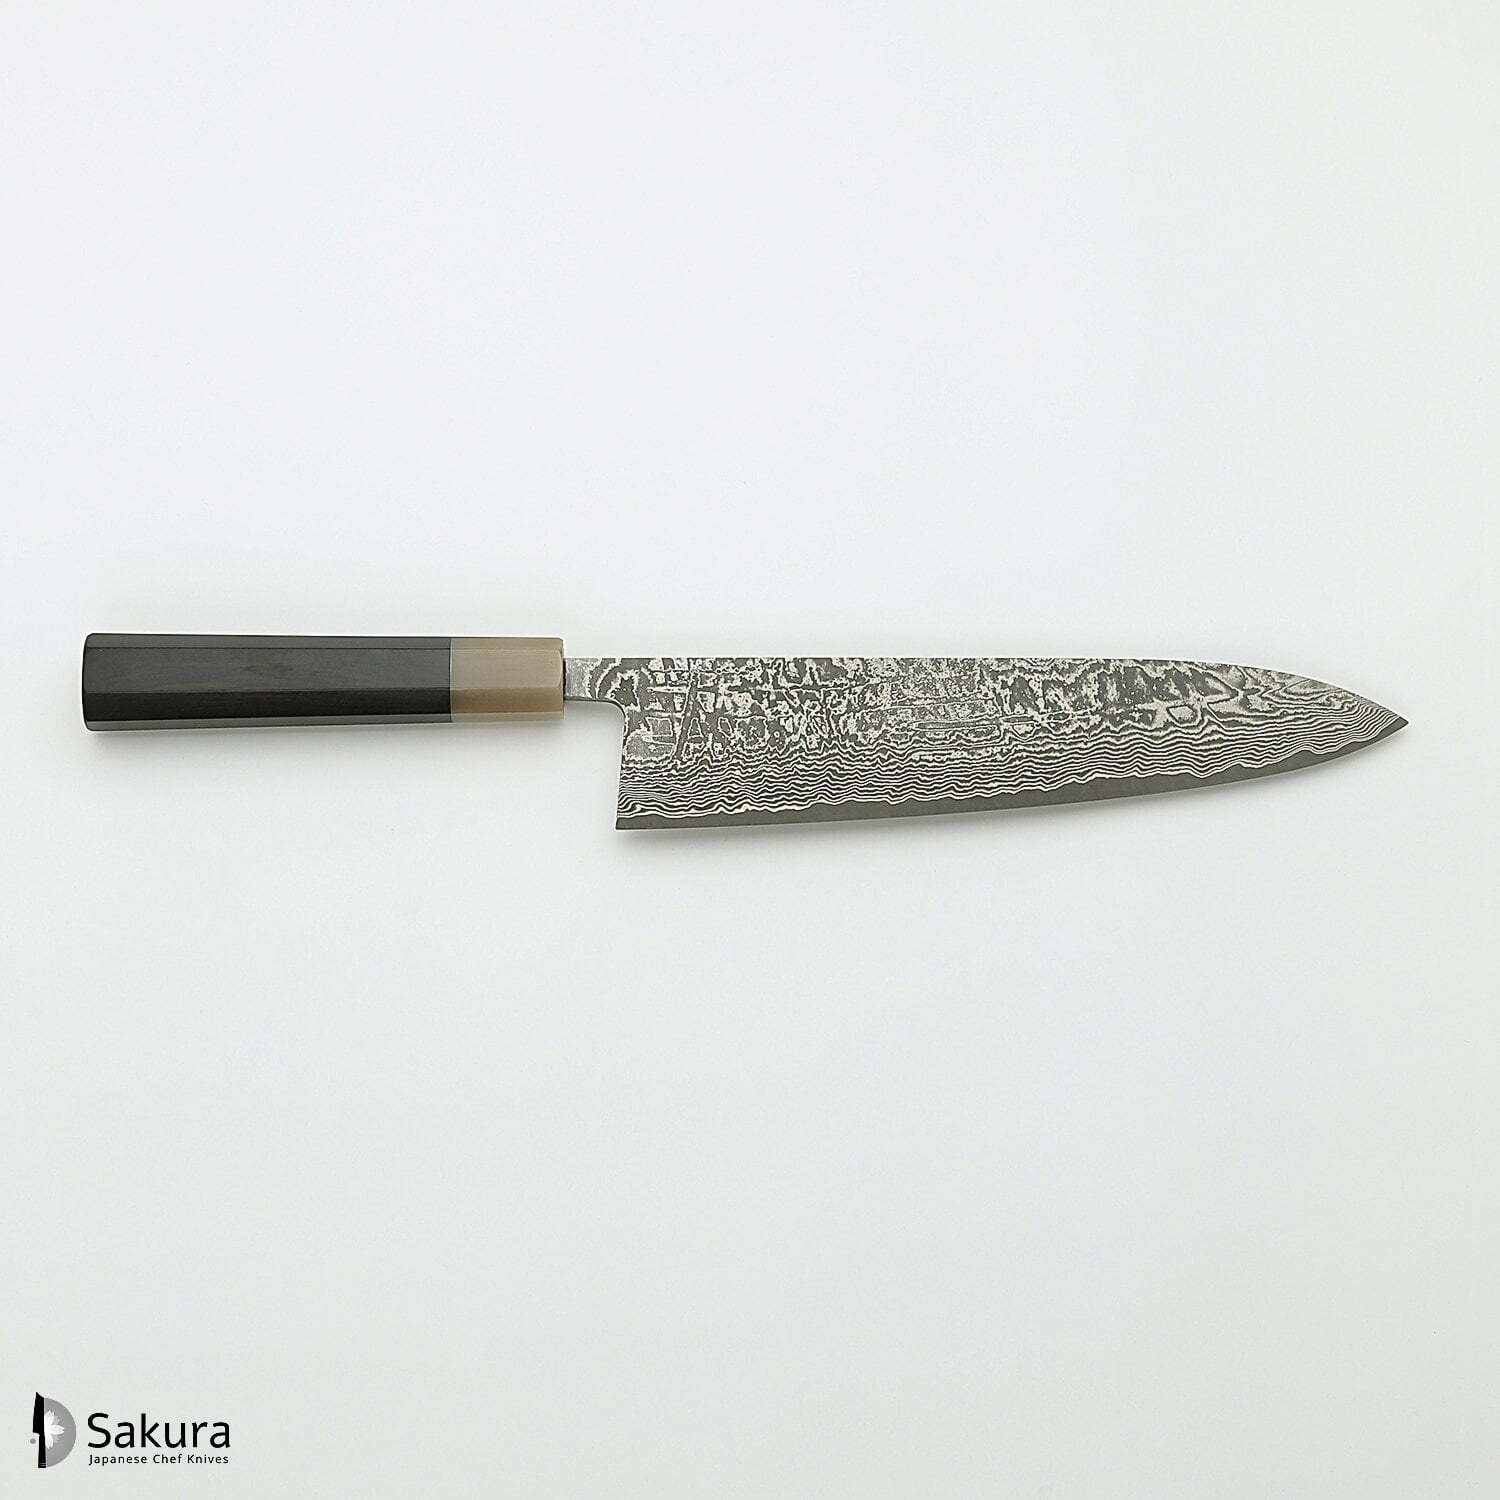 סכין שף רב-תכליתית גִּיוּטוֹ 210מ״מ מחושלת בעבודת יד 3 שכבות: פלדת פחמן יפנית מתקדמת מסוג R2/SG2 עטופה פלדת דמשק אל-חלד גימור דמשק שירו קאמו יפן